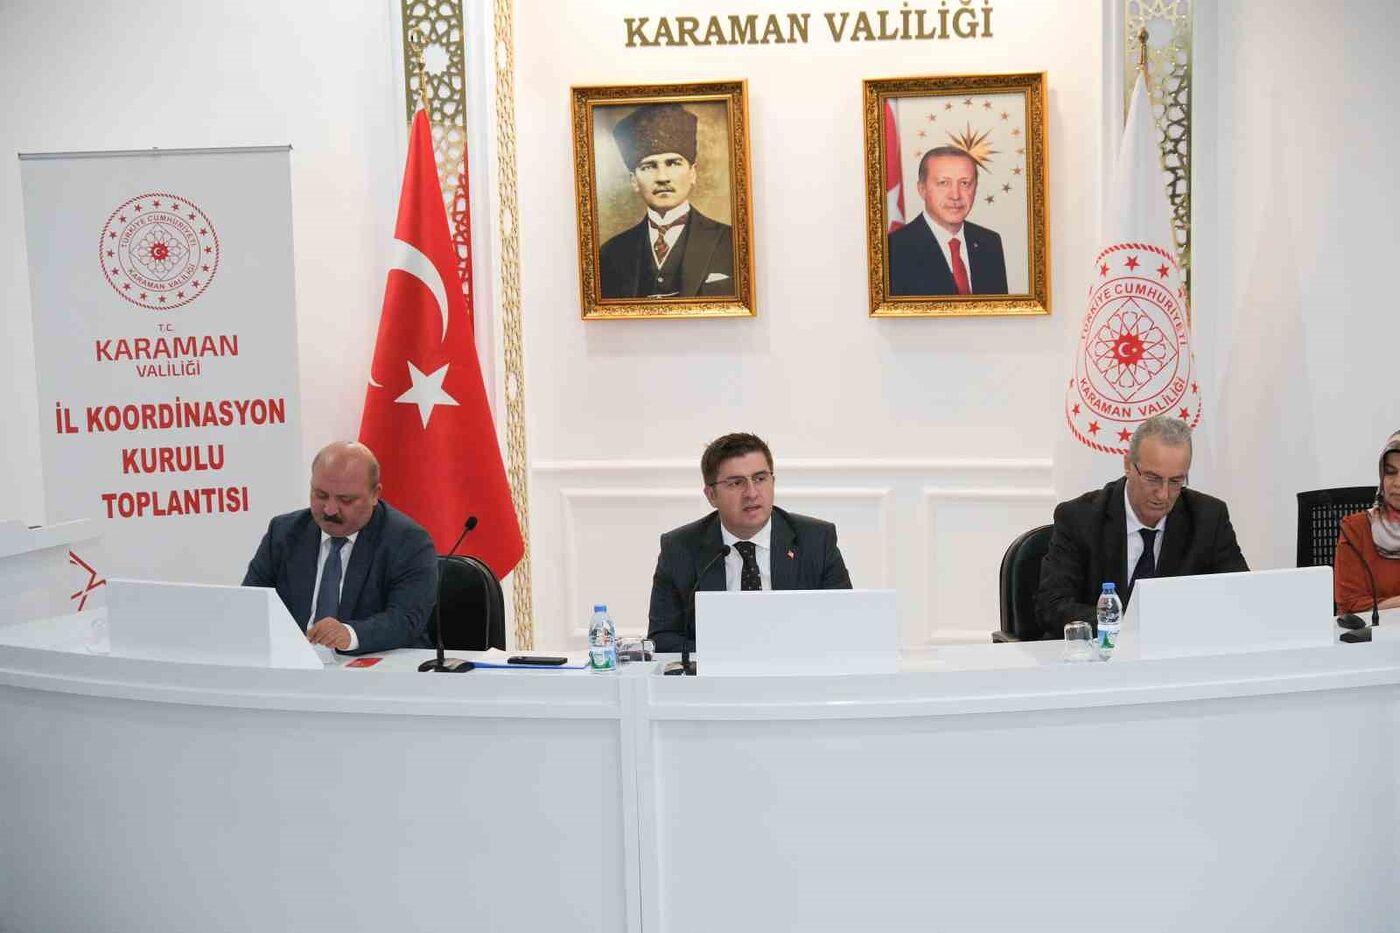 Karaman’da İl Koordinasyon Kurulu Toplantısı yapıldı